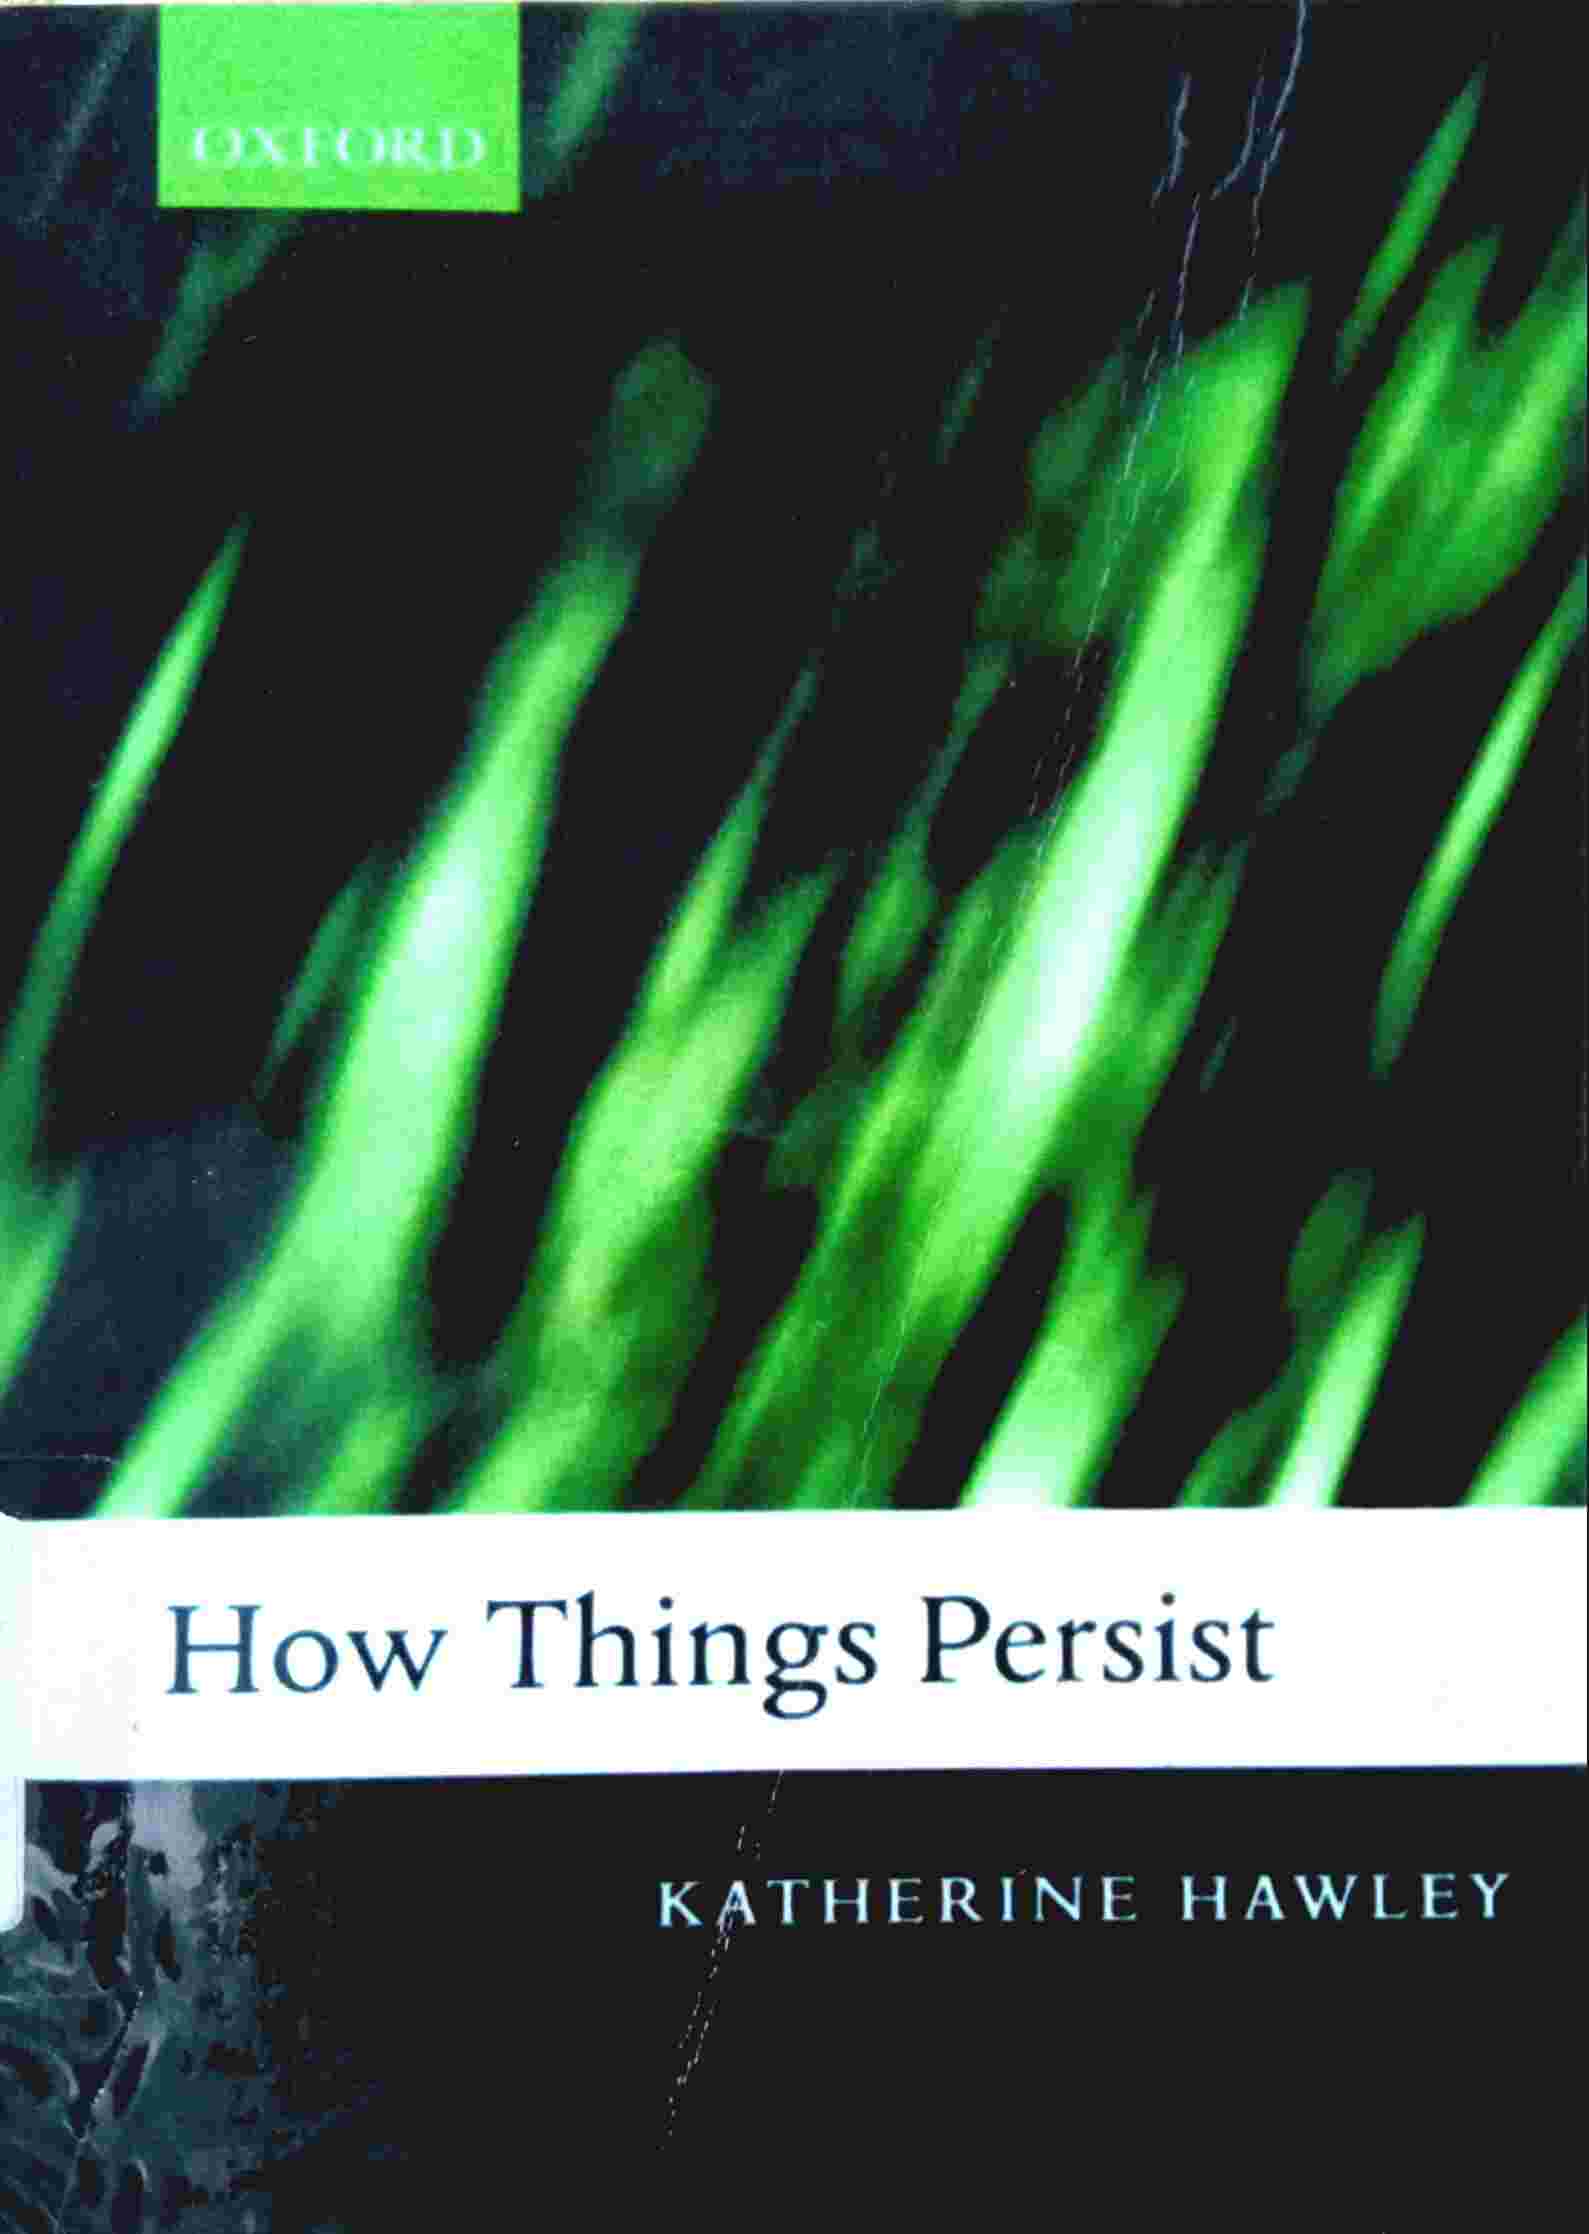 HOW THINGS PERSIST